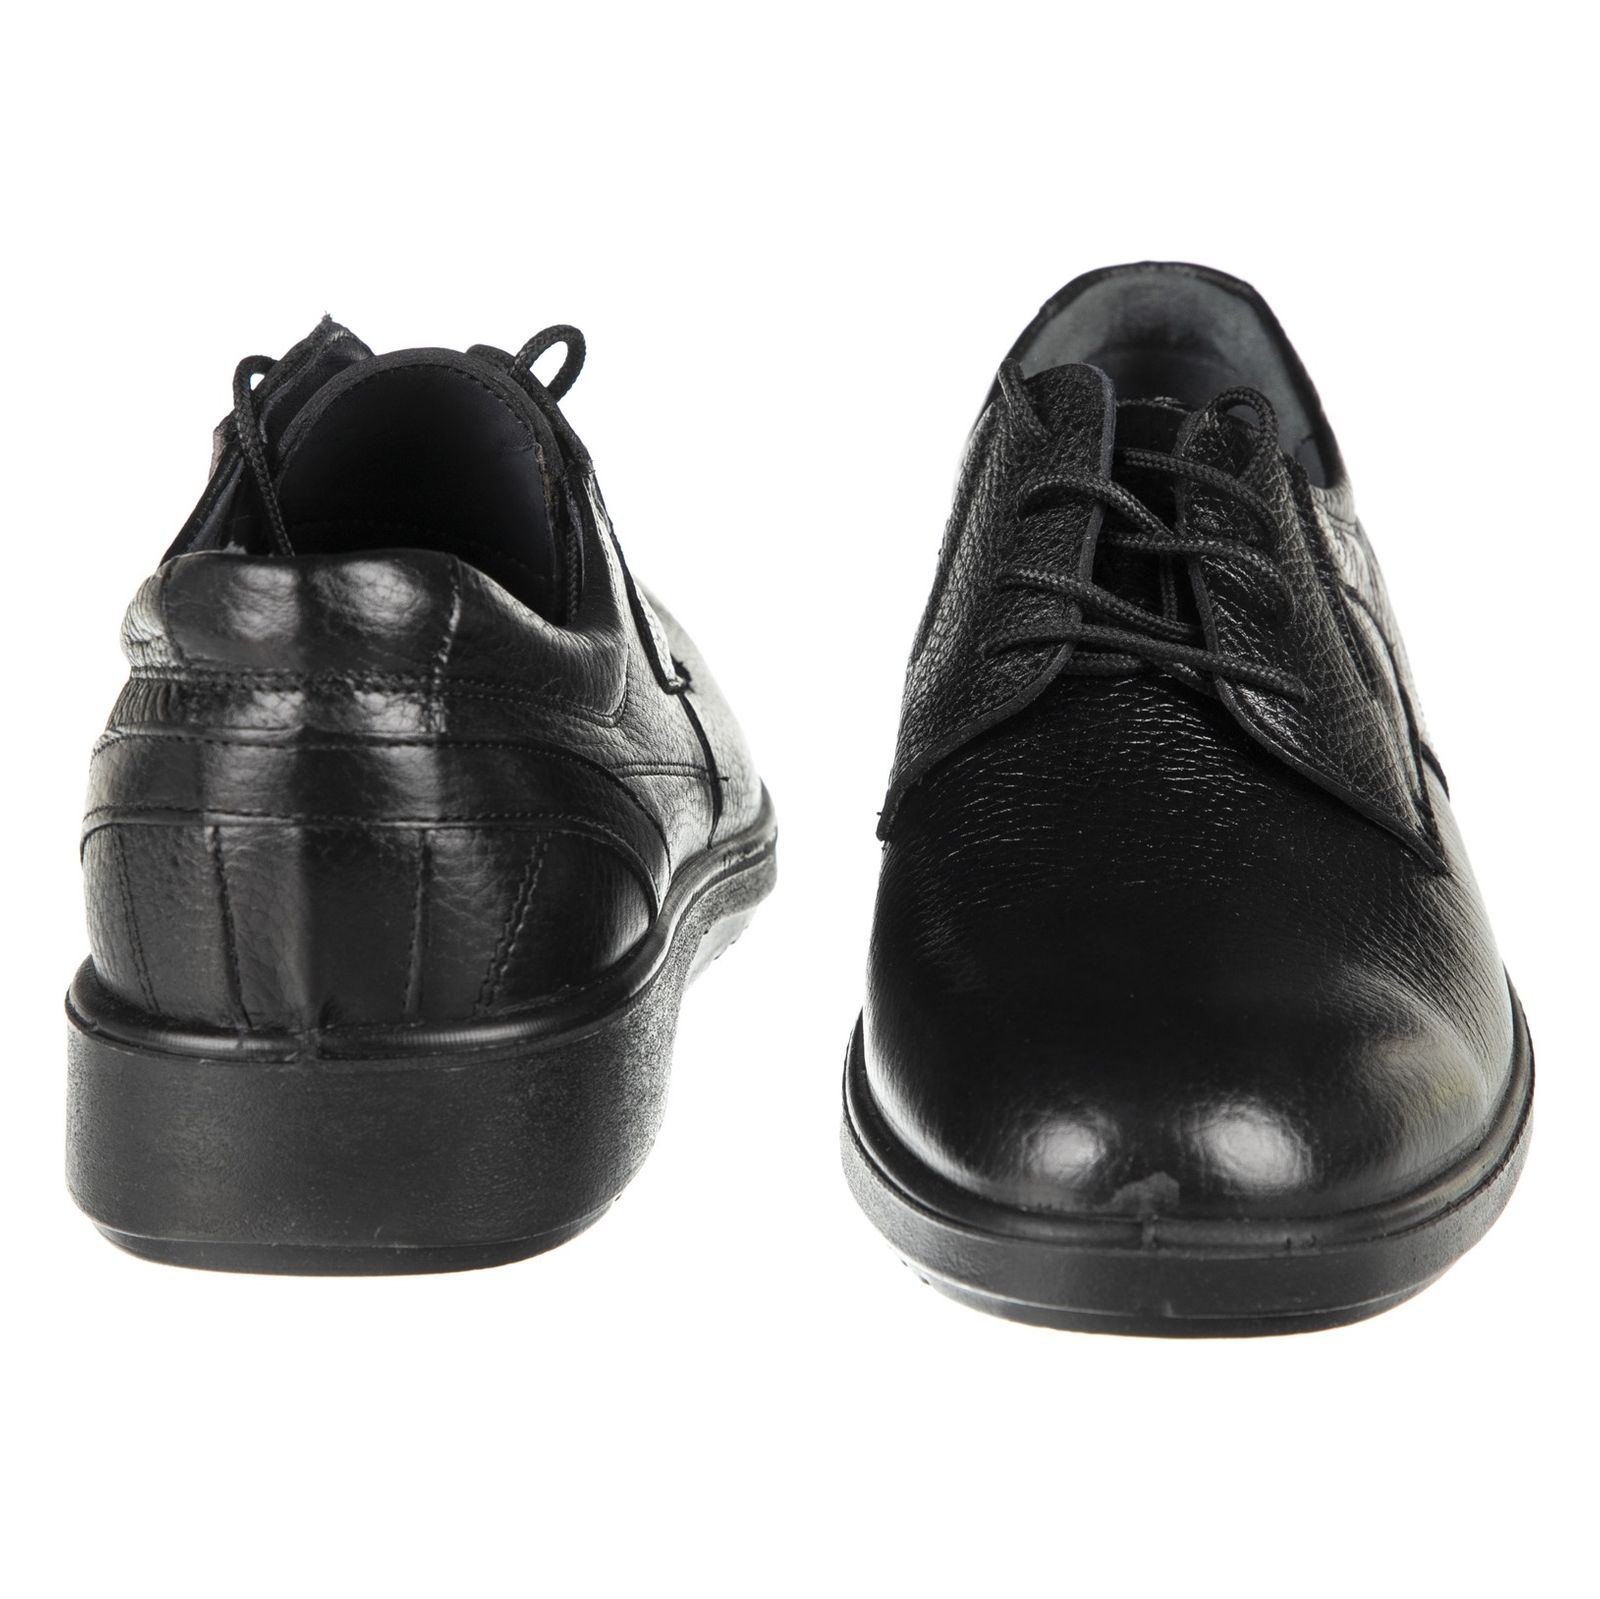 کفش مردانه بلوط مدل 7216B503-101 - مشکی - 6